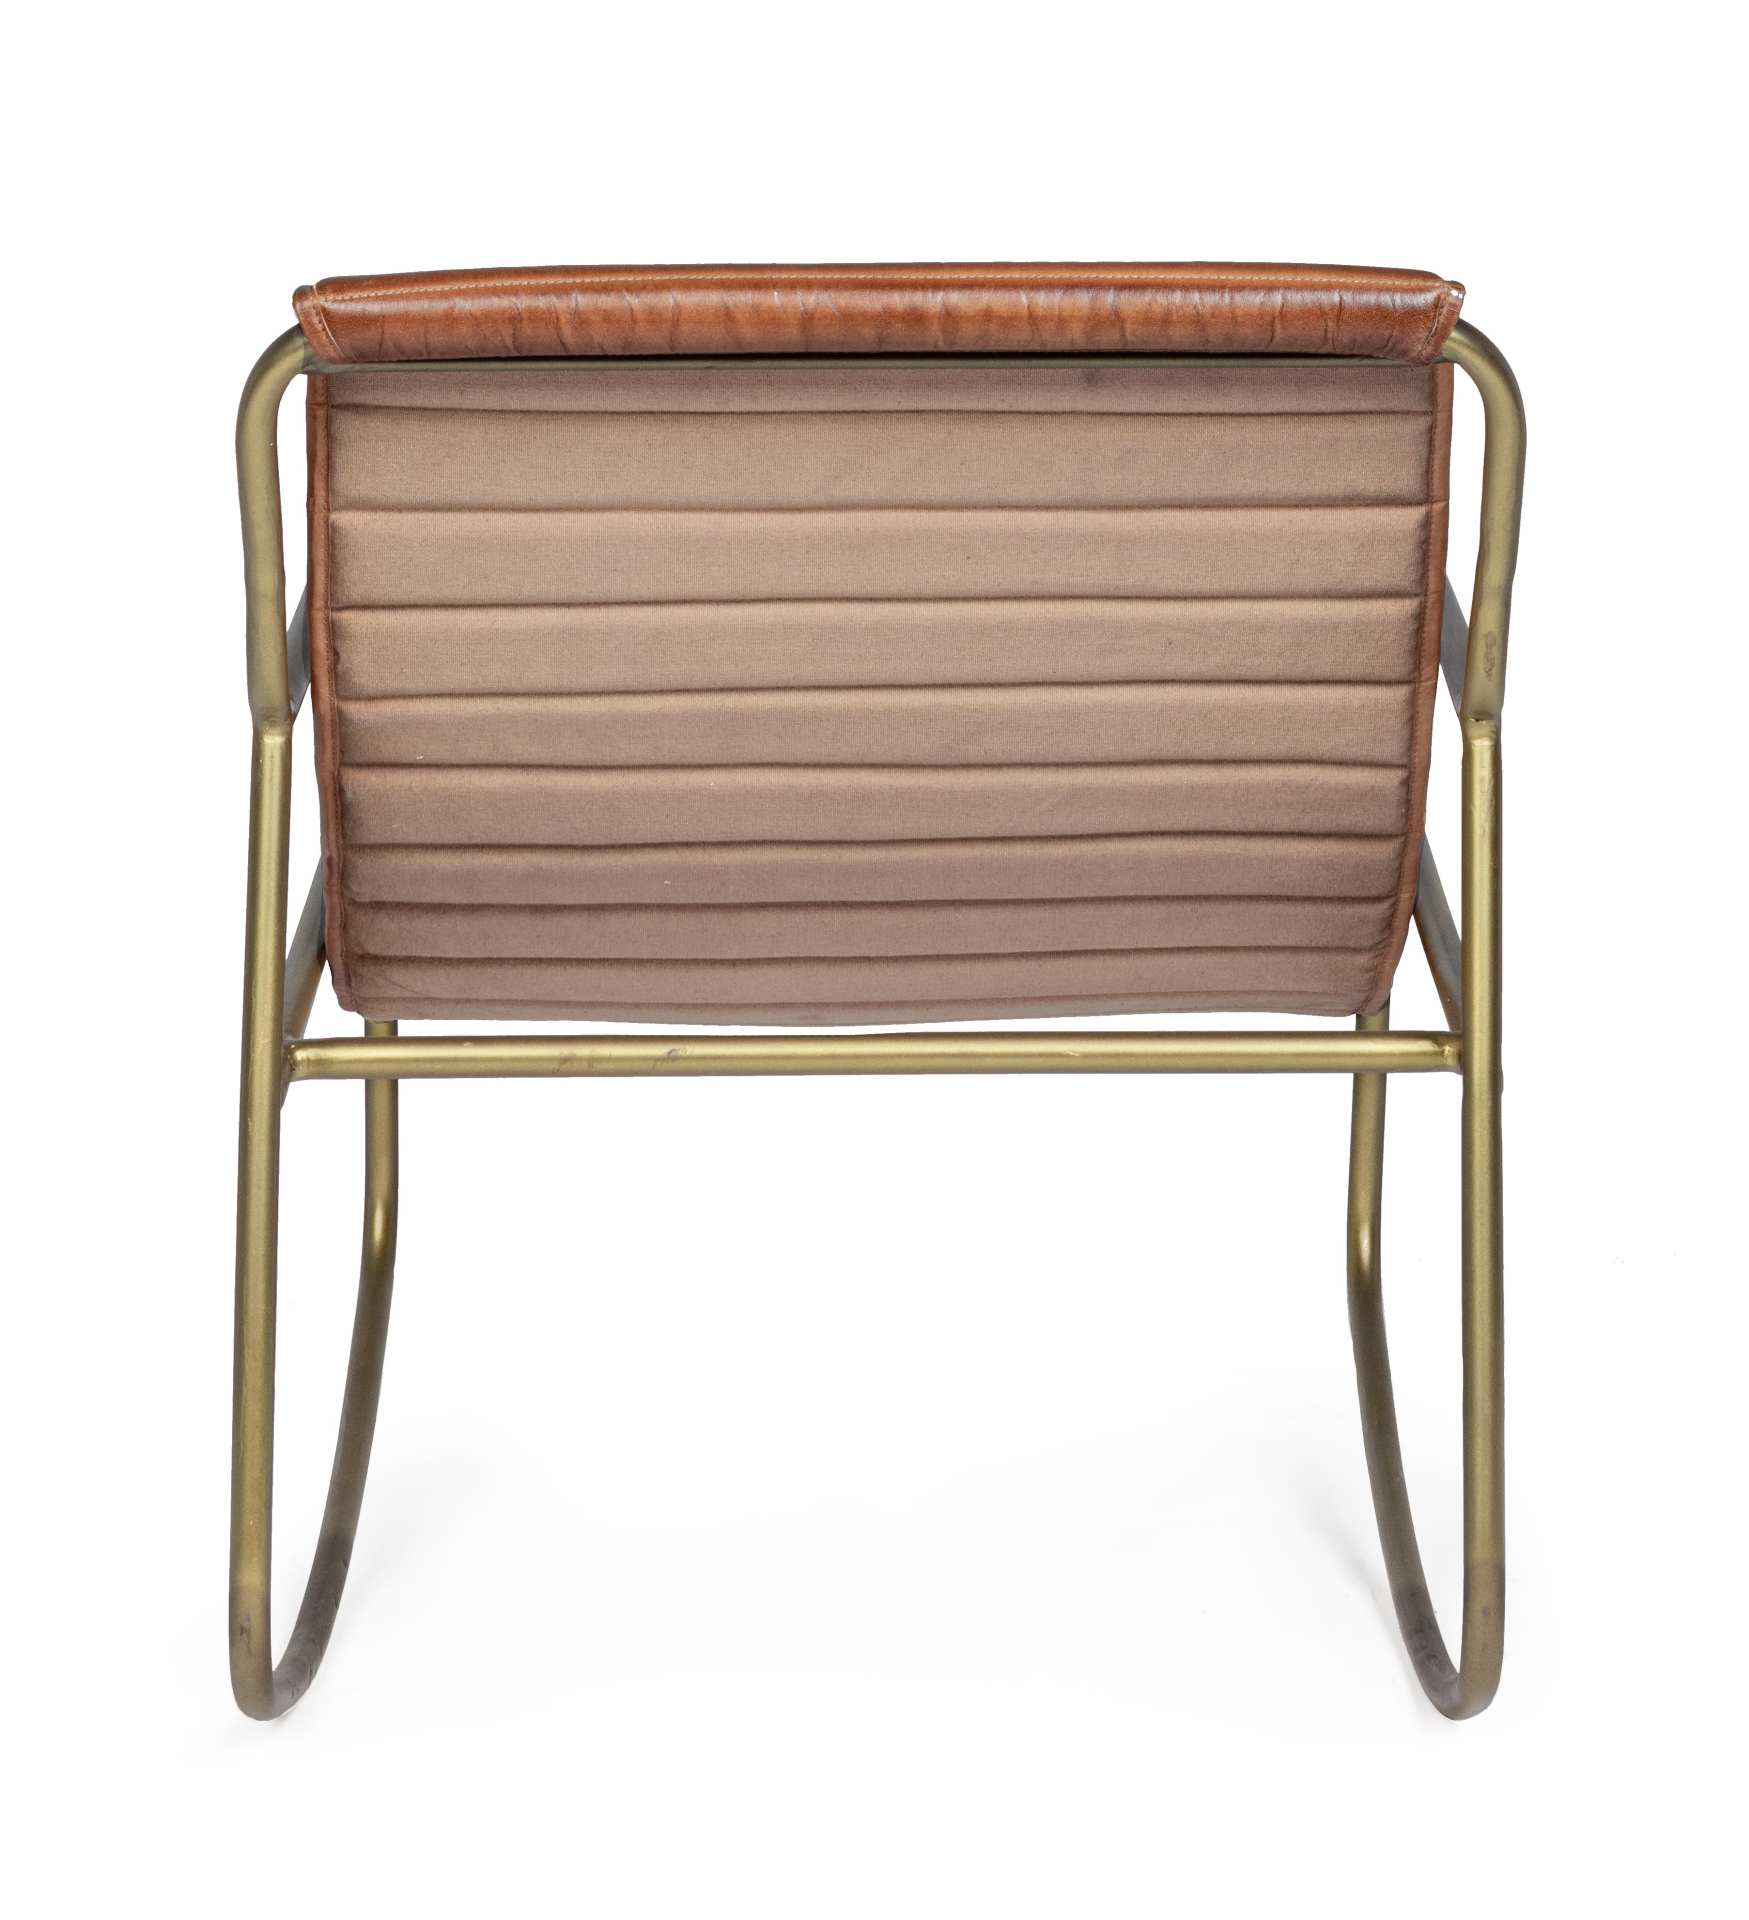 Der Sessel Karisma überzeugt mit seinem klassischen Design. Gefertigt wurde er aus Leder, welches einen Cognac Farbton besitzt. Das Gestell ist aus Metall und hat eine goldene Farbe. Der Sessel besitzt eine Sitzhöhe von 44 cm. Die Breite beträgt 59 cm.